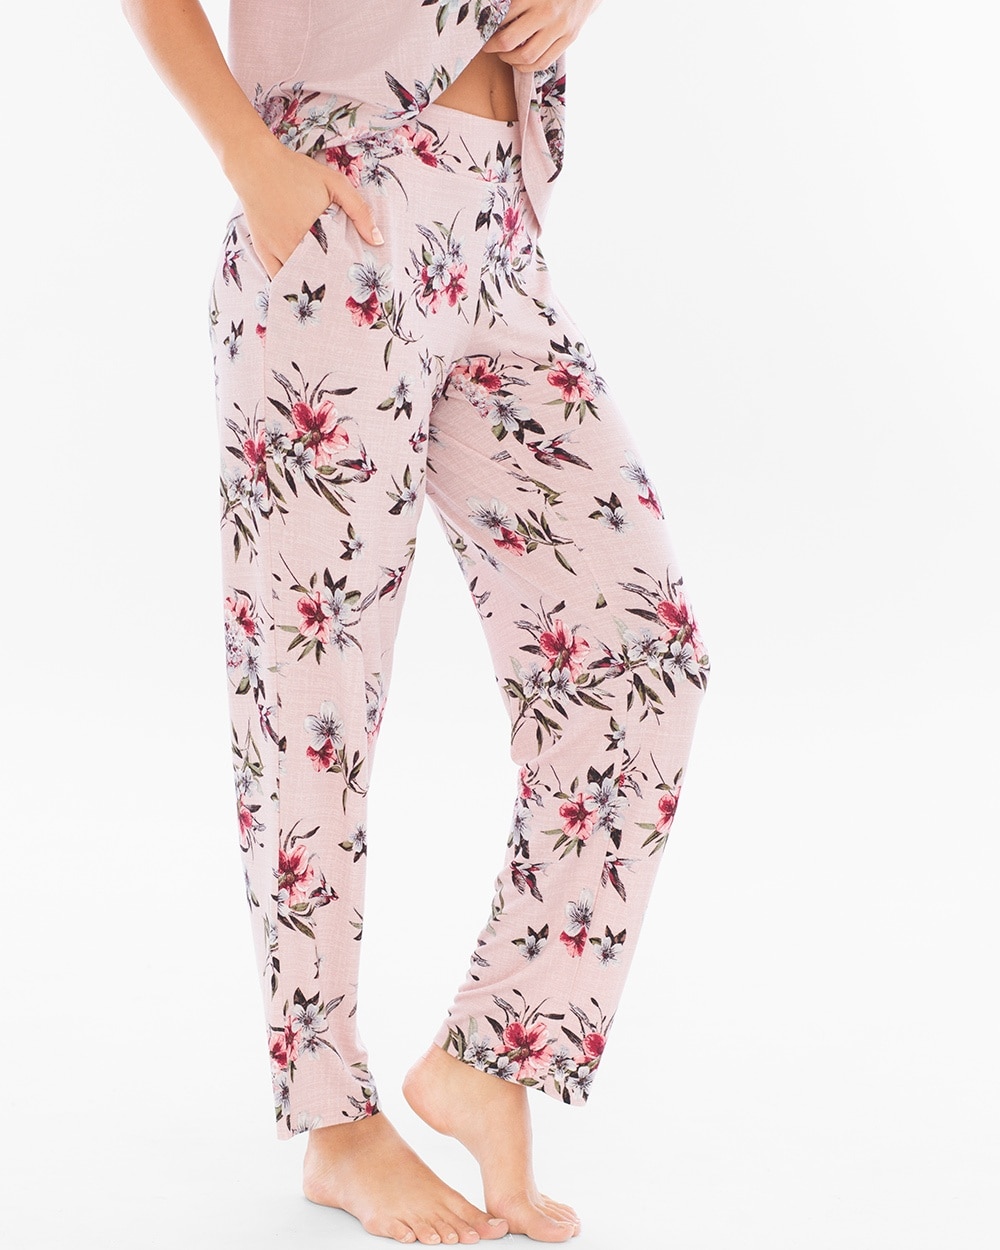 Cool Nights Ankle Pajama Pants Fancy Floral Vintage Pink